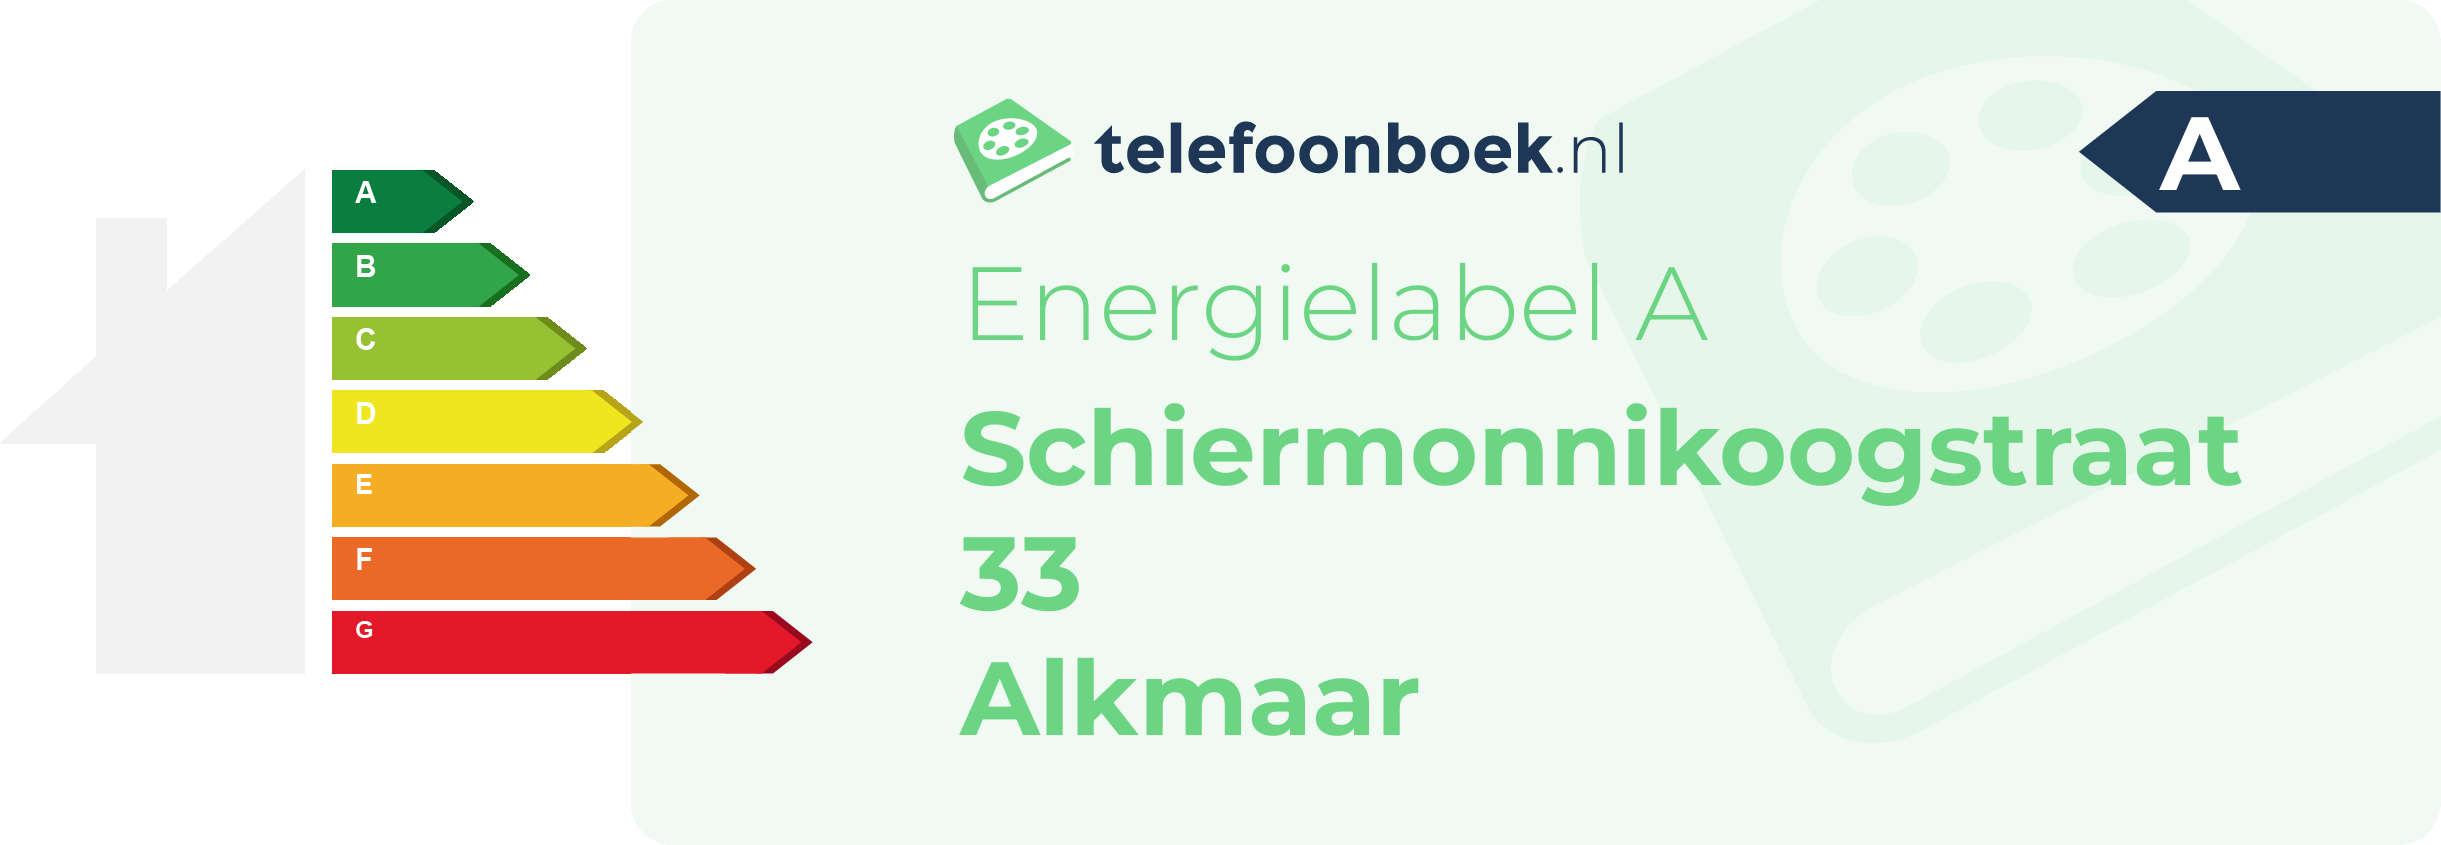 Energielabel Schiermonnikoogstraat 33 Alkmaar